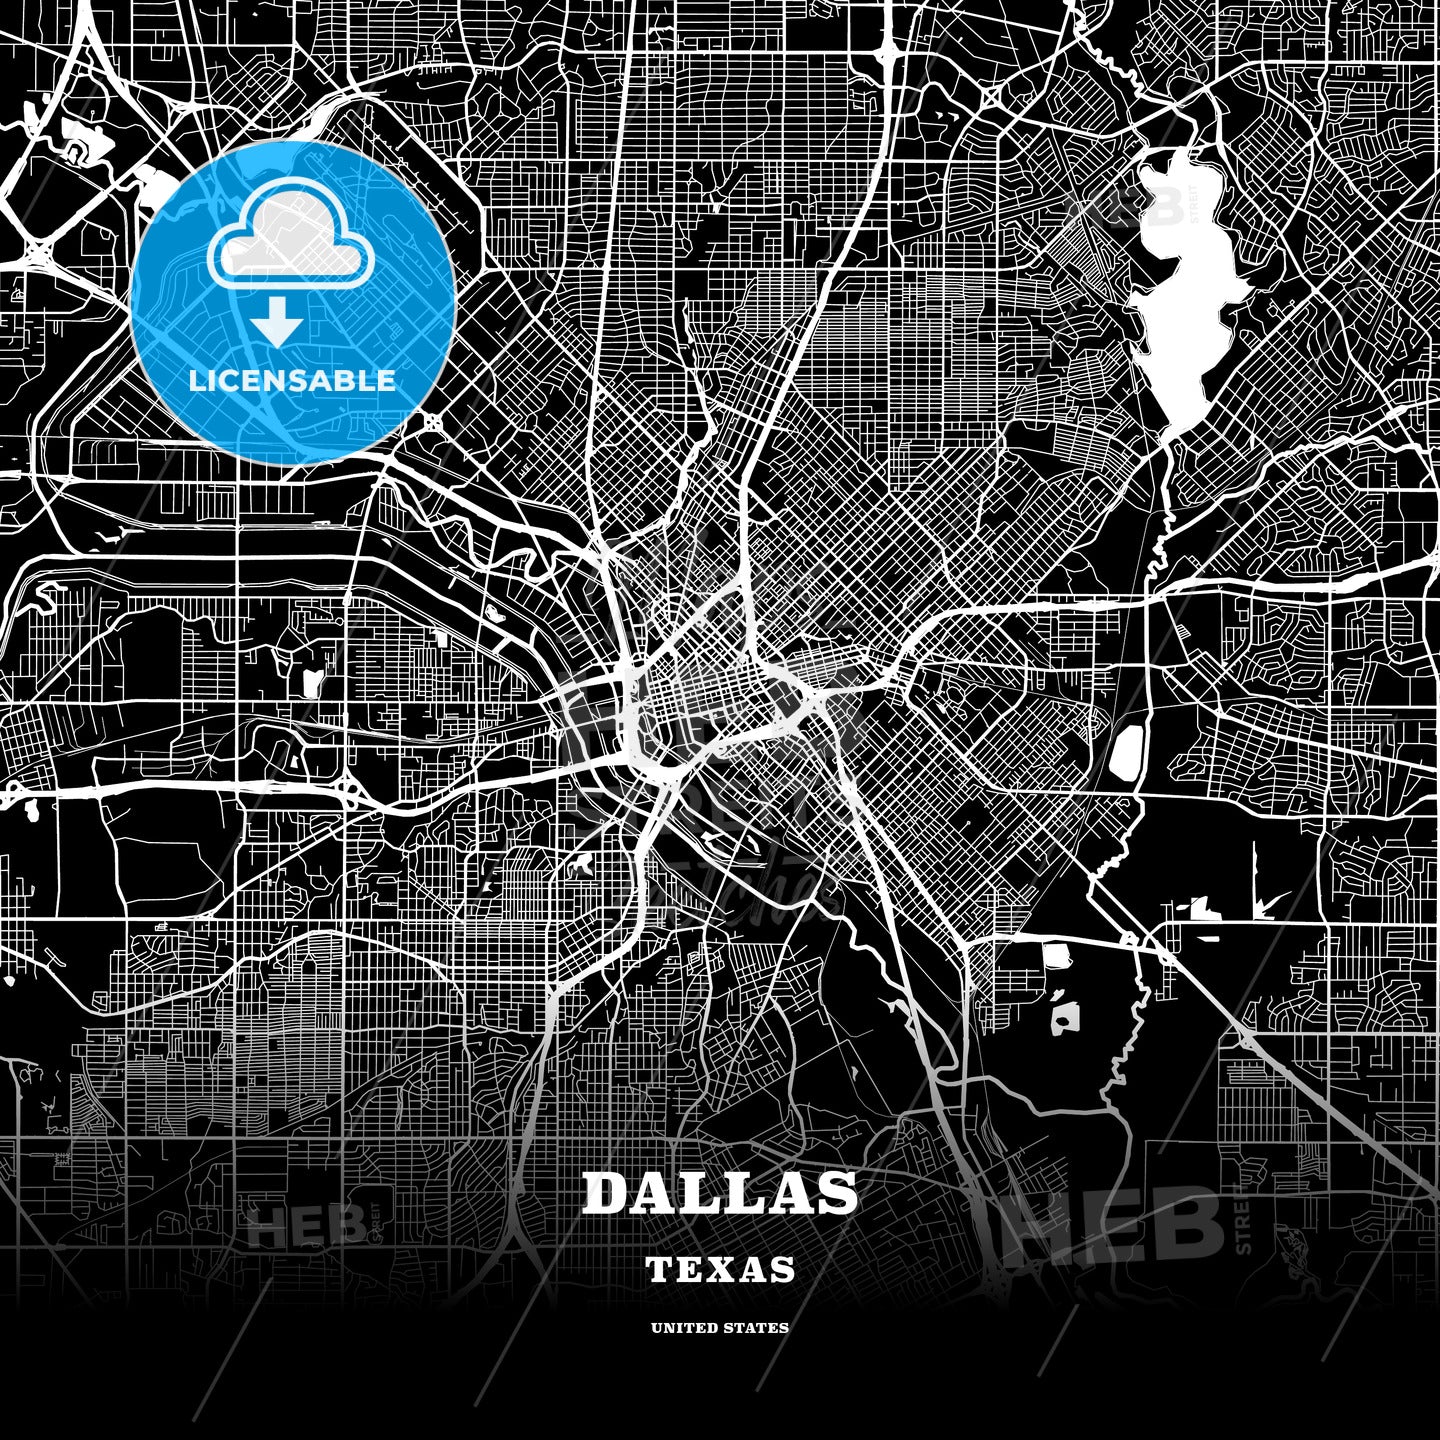 Dallas, Texas, USA map